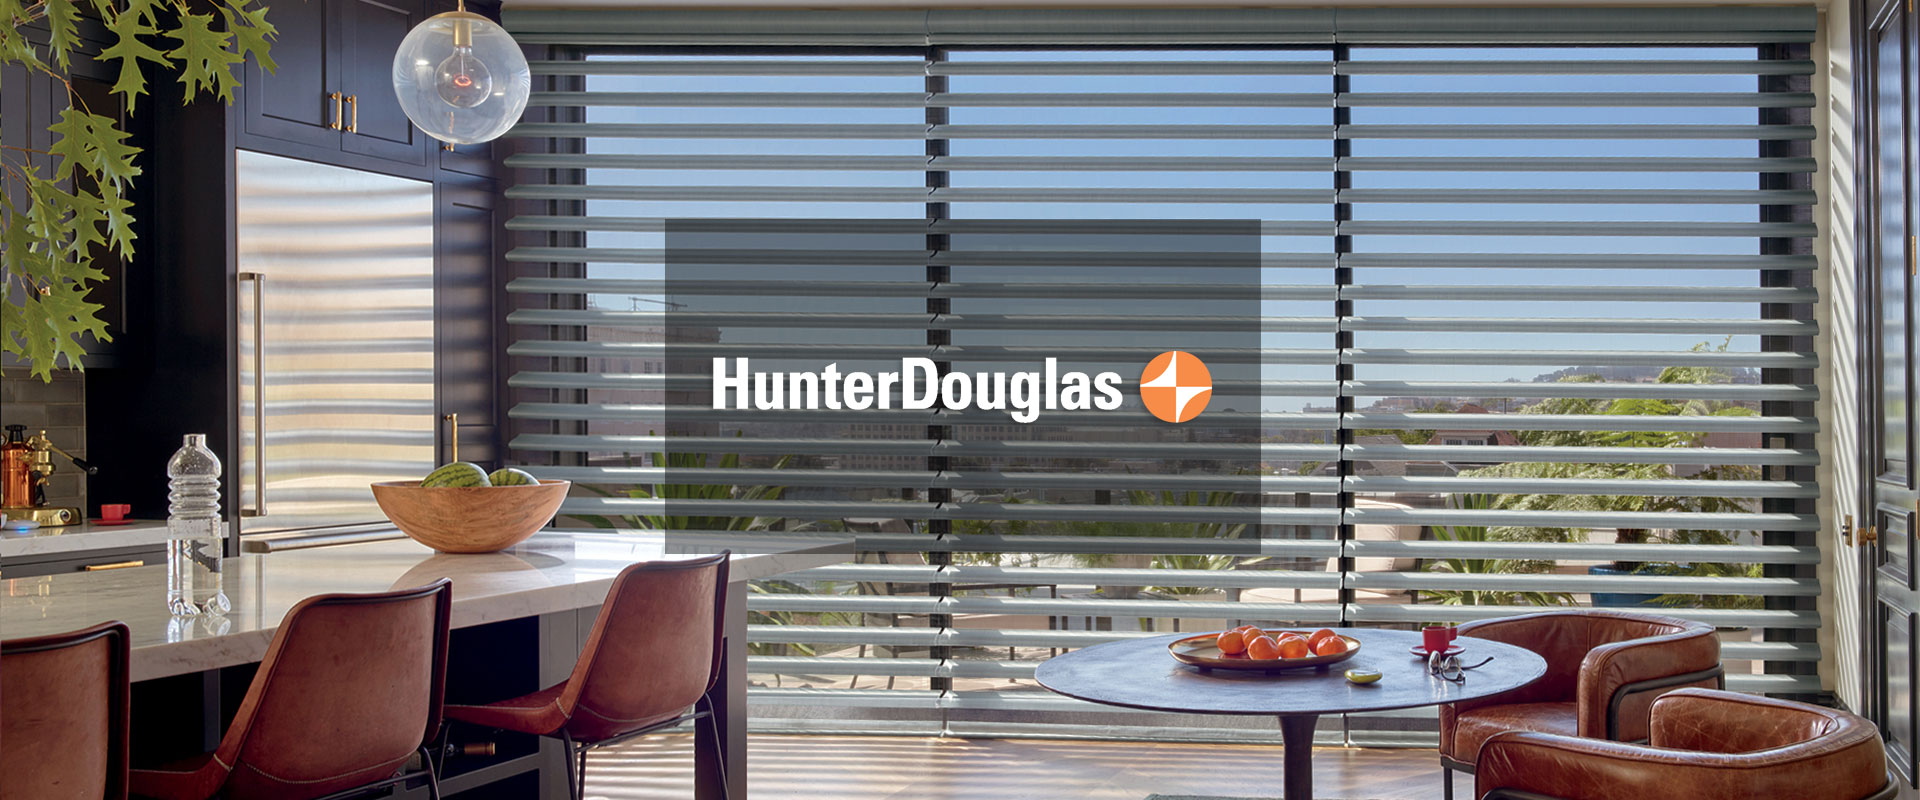 Image of Hunter Douglas Blinds